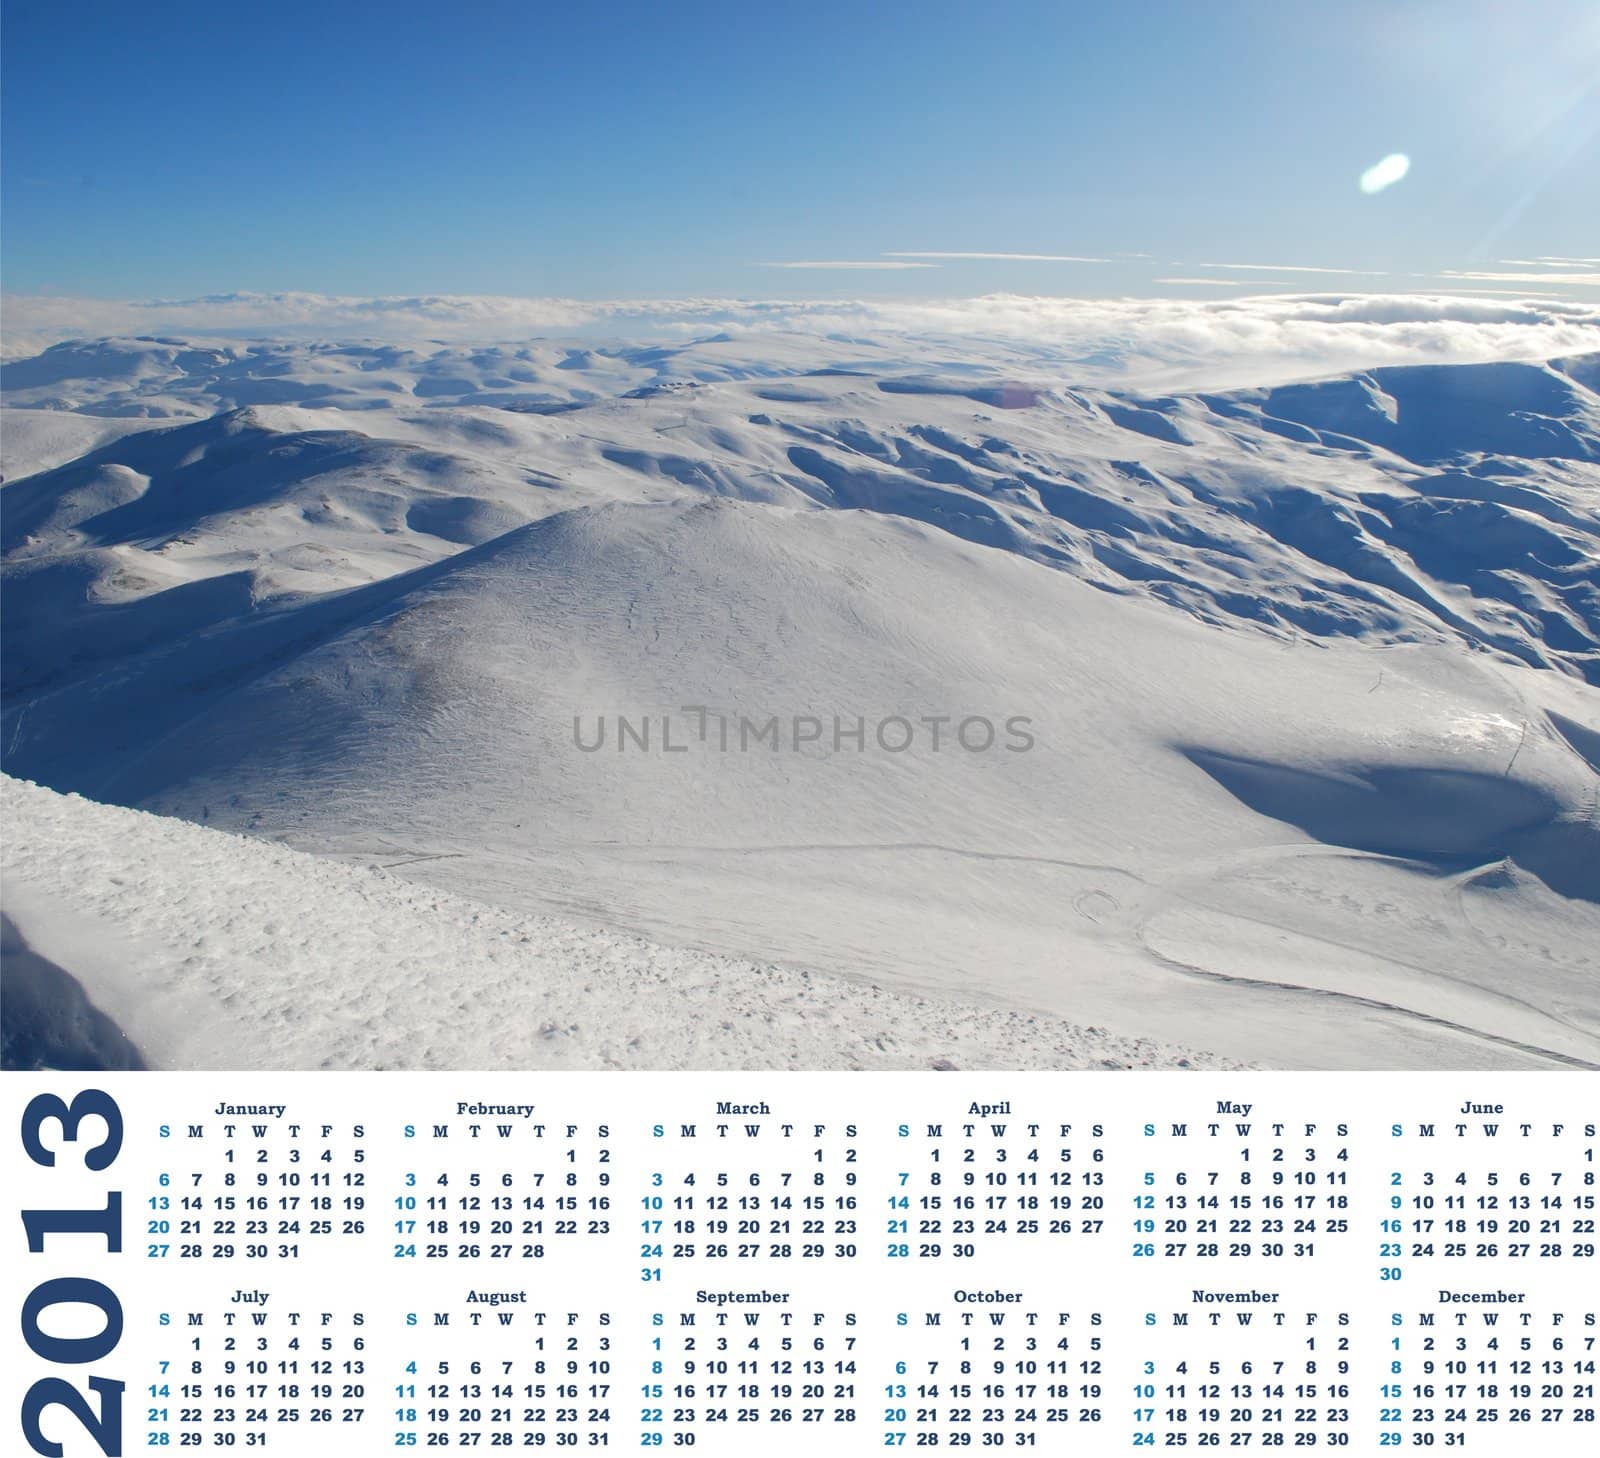  calendar 2013  with view of snow mountains in Turkey Palandoken Erzurum ski resort 